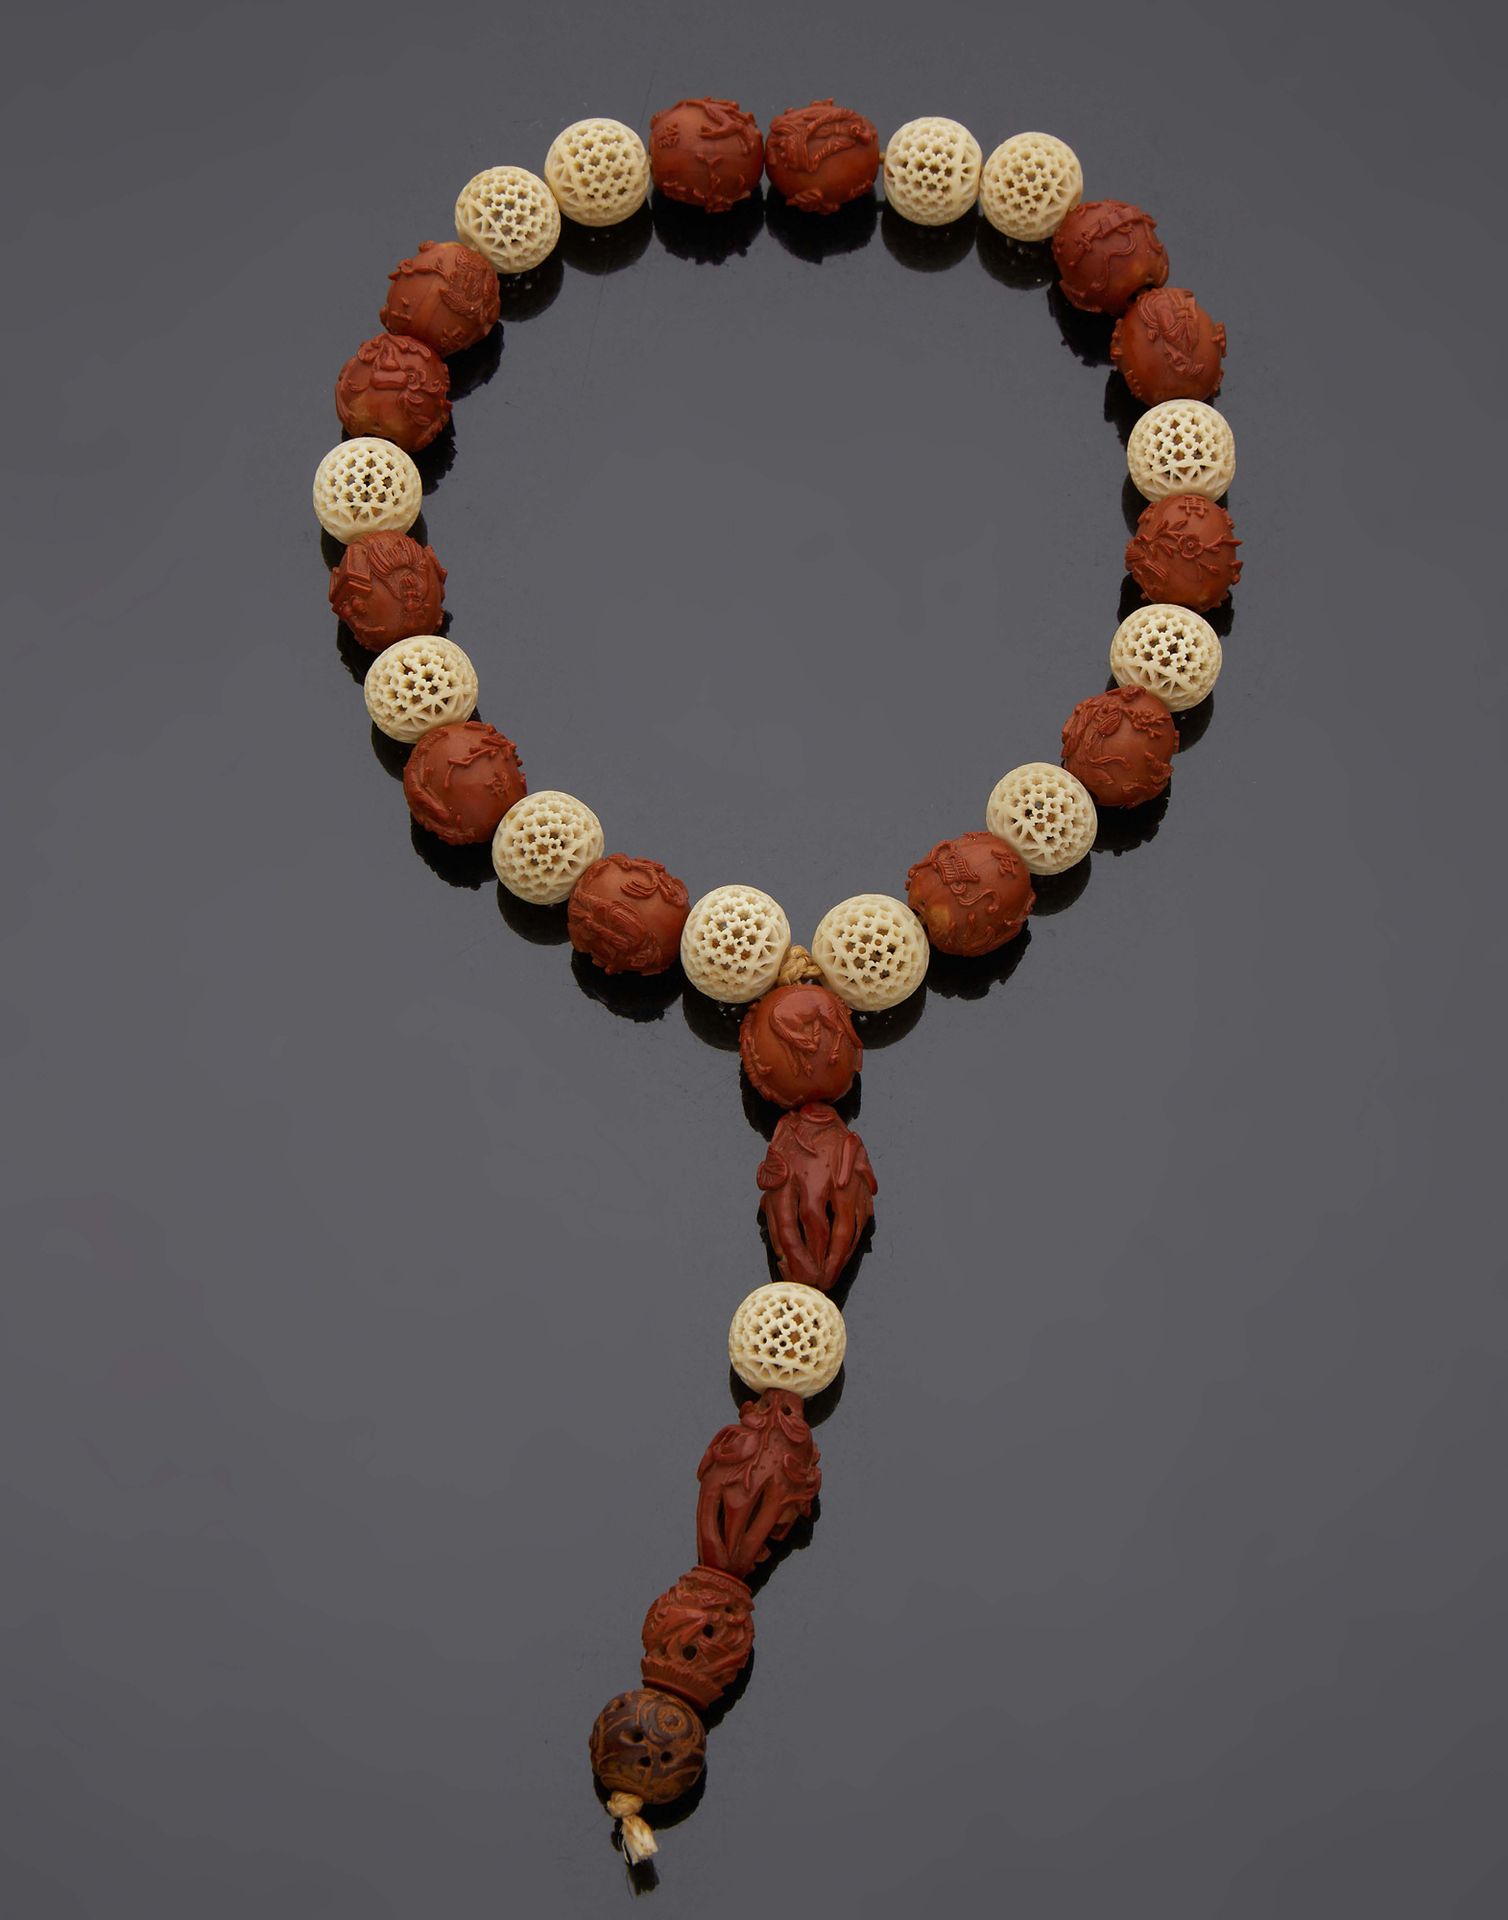 CHINE 镂空象牙珠念珠与交替的科罗索坚果珠
19世纪下半叶
长：22厘米